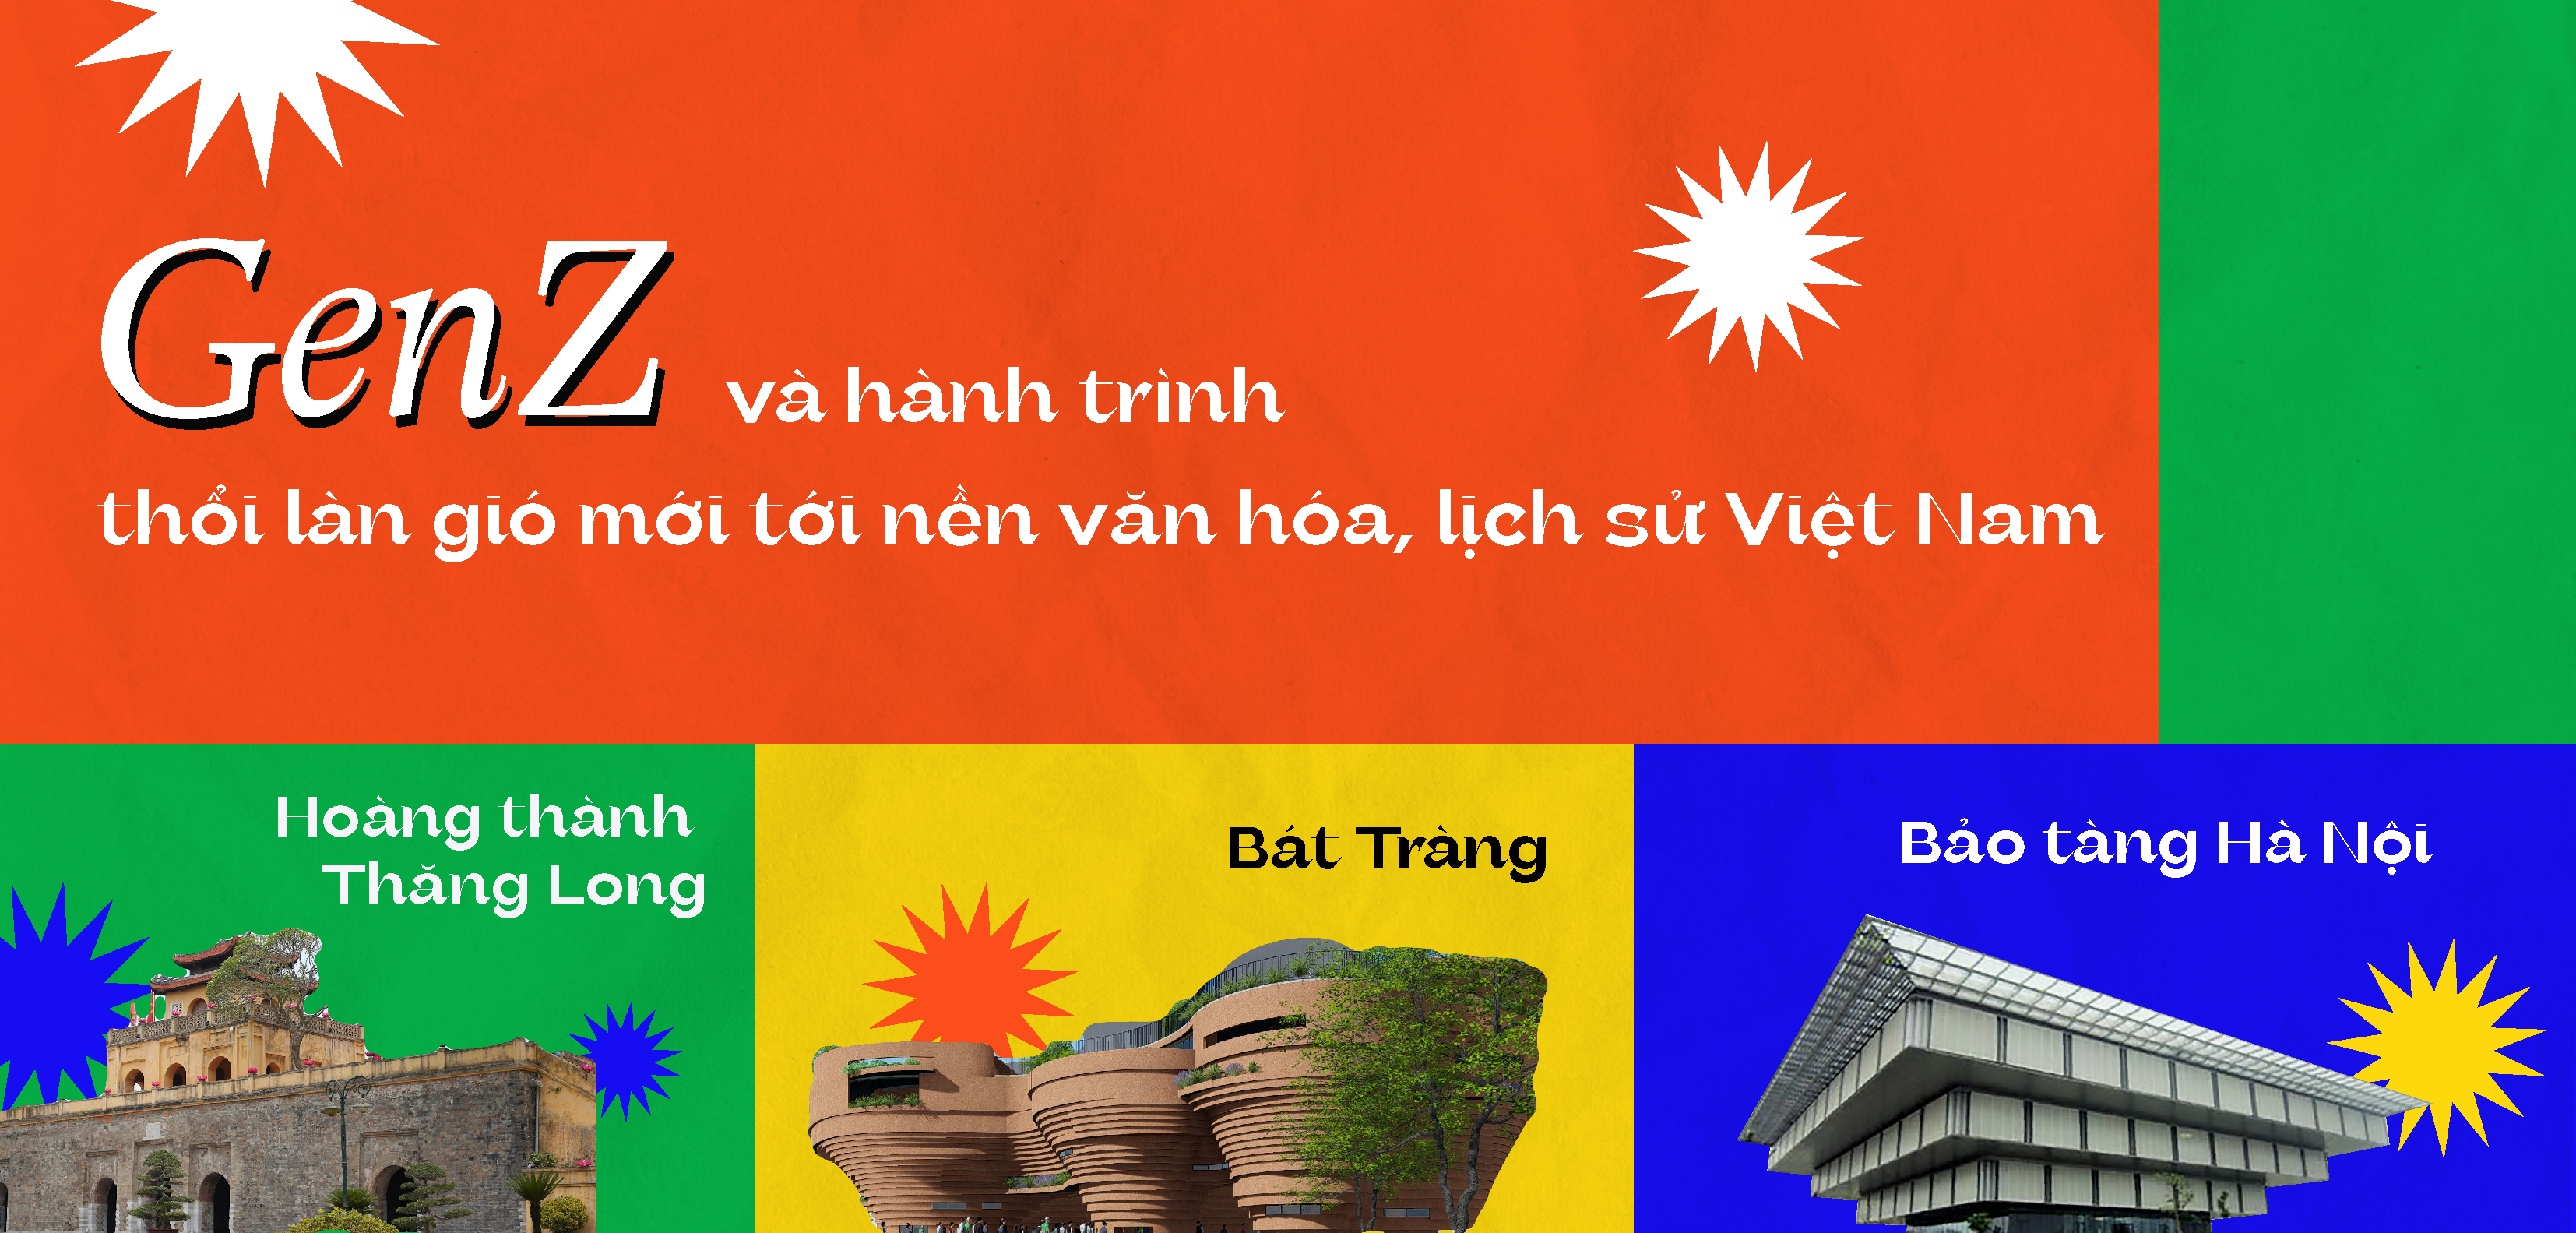 Gen Z và hành trình thổi làn gió mới tới nền văn hóa, lịch sử Việt Nam 